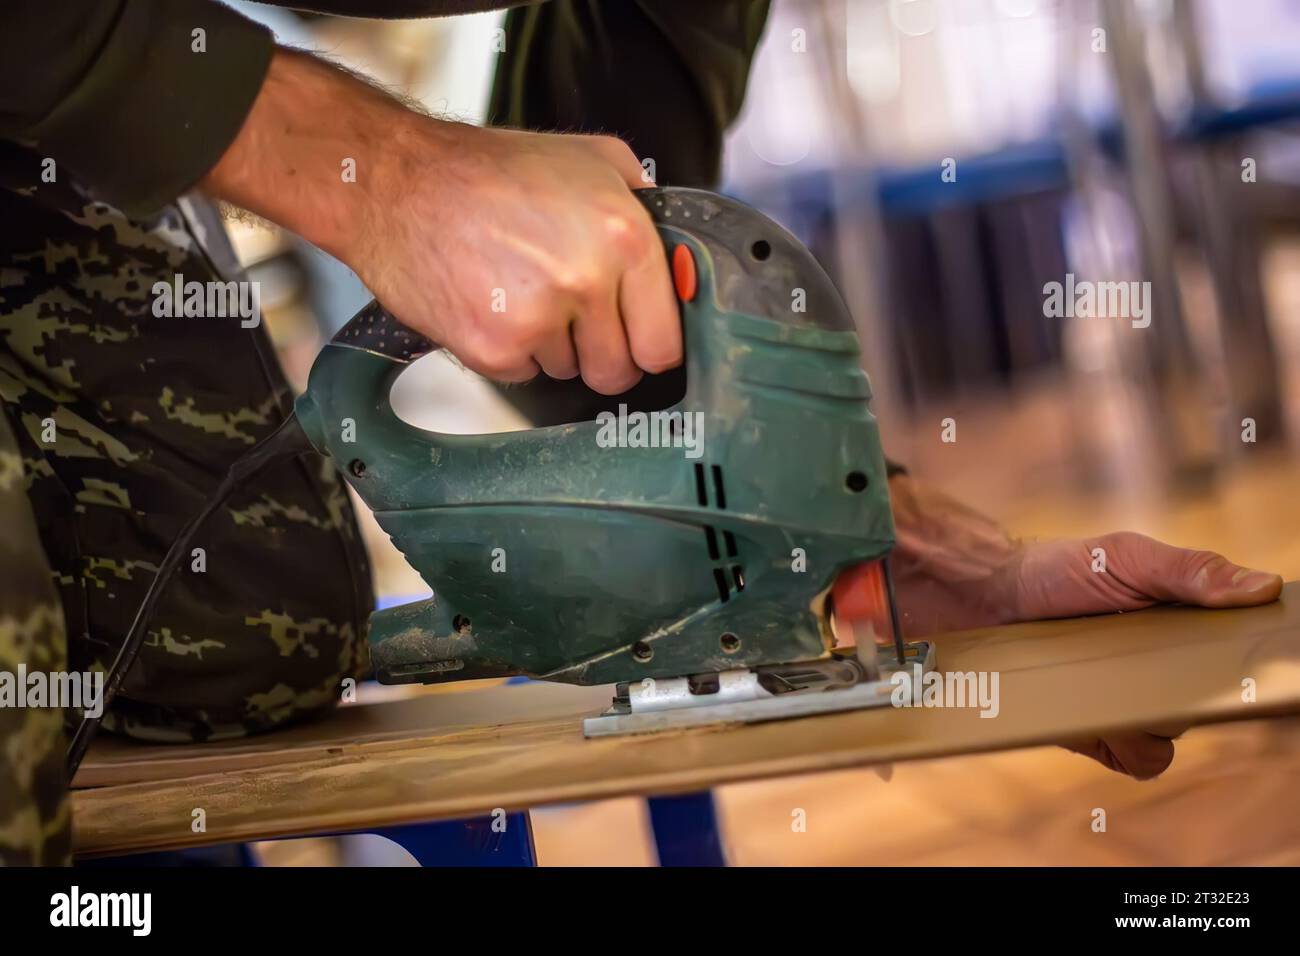 Handwerkskunst der Tischlerei: Ein Handwerker bedient geschickt eine elektrische Stichsäge, um Holzsperrholz für einzigartige Möbelstücke zu schneiden. Stockfoto